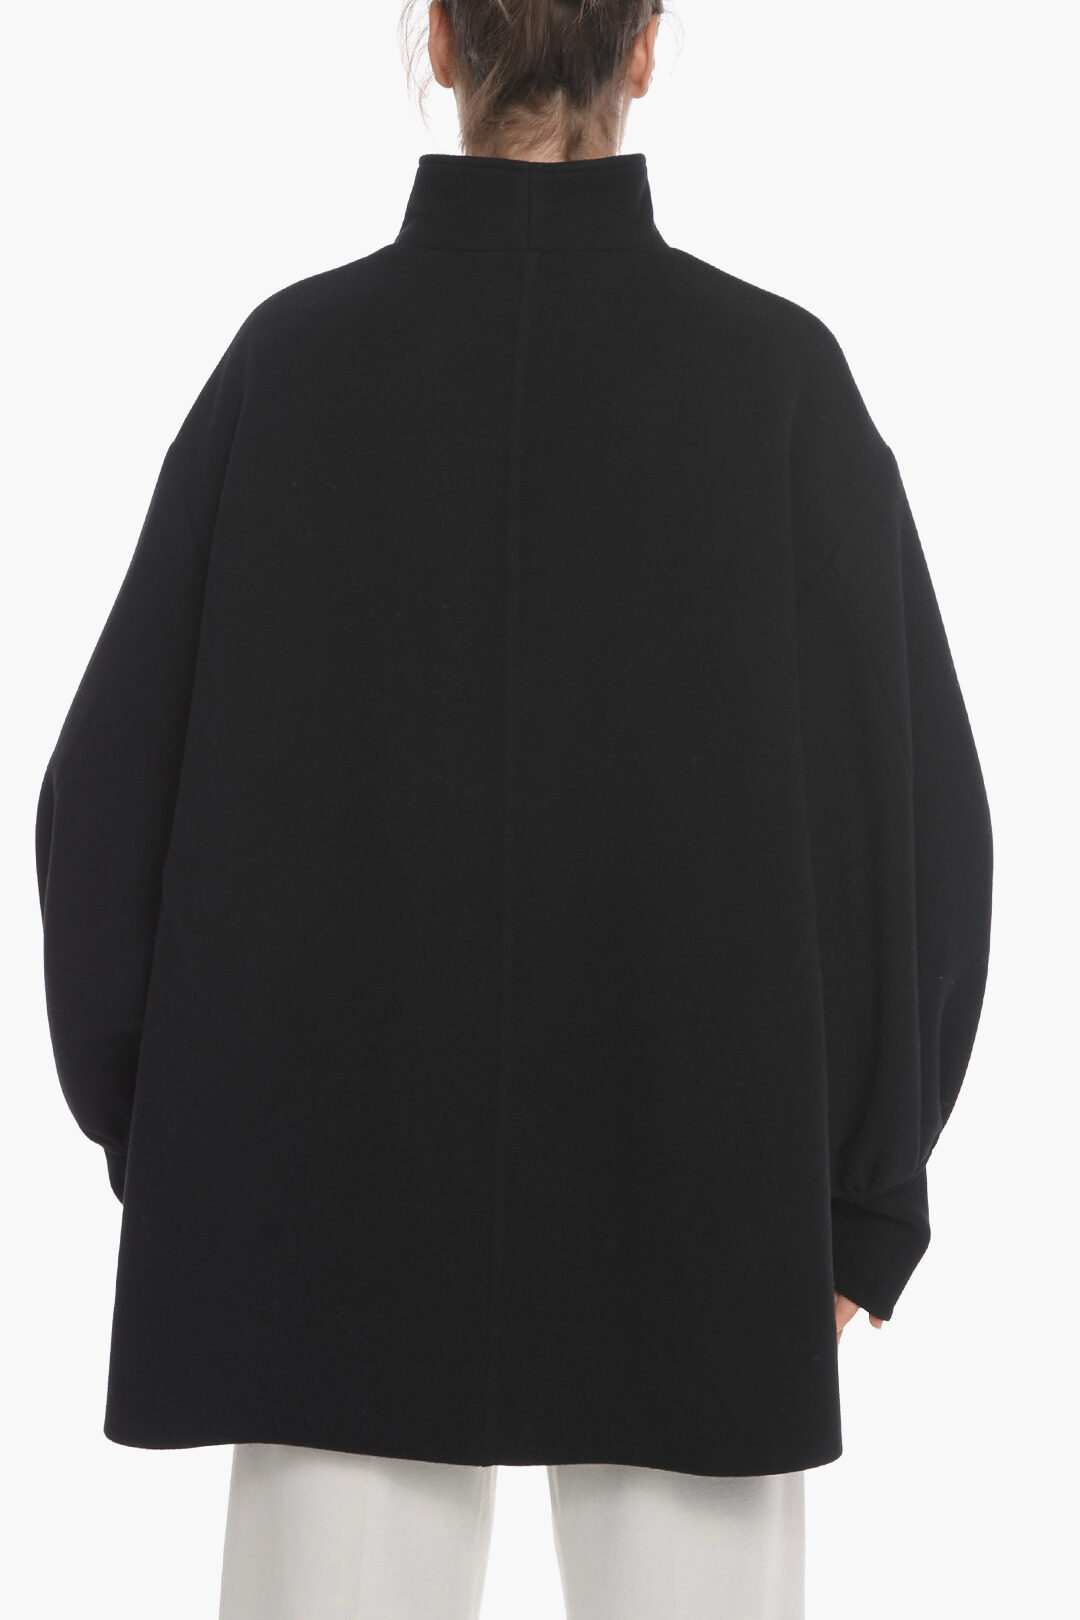 Jil Sander Virgin Wool Kaban jacket with Puffed Sleeves women - Glamood ...